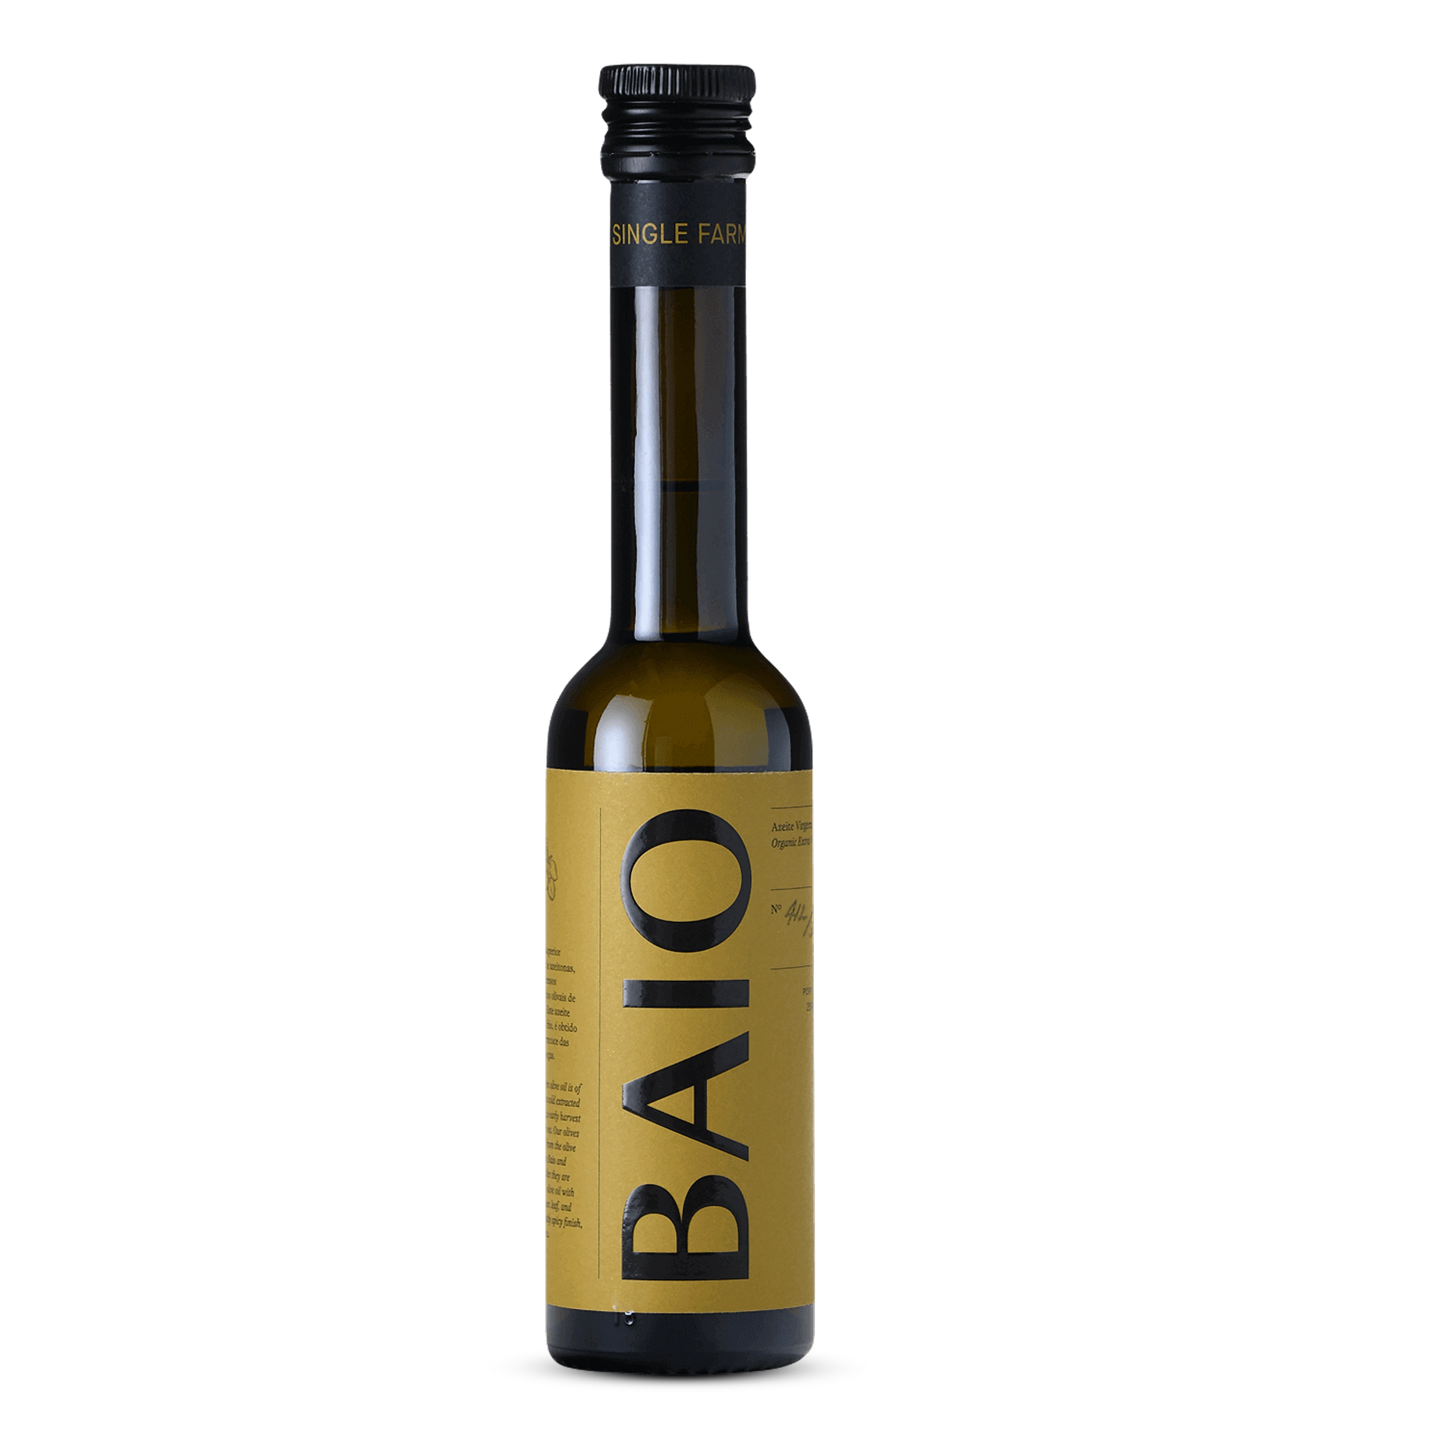 Steun Pro.1000km met €3,50 - BAIO olijfolie